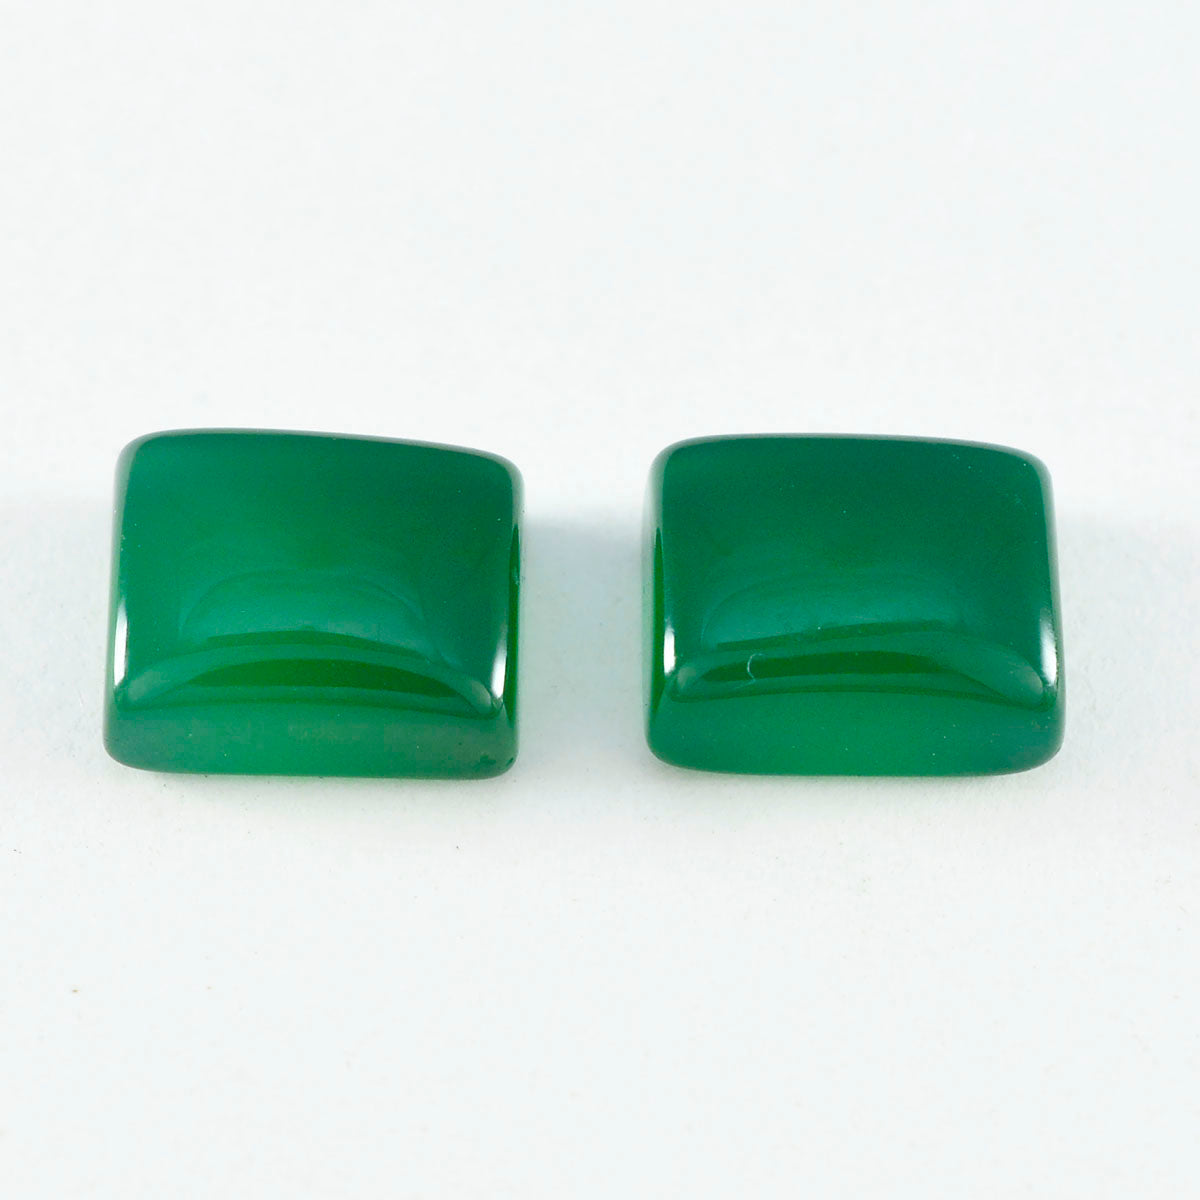 Riyogems 1PC Green Onyx Cabochon 10x12 mm Octagon Shape good-looking Quality Gems